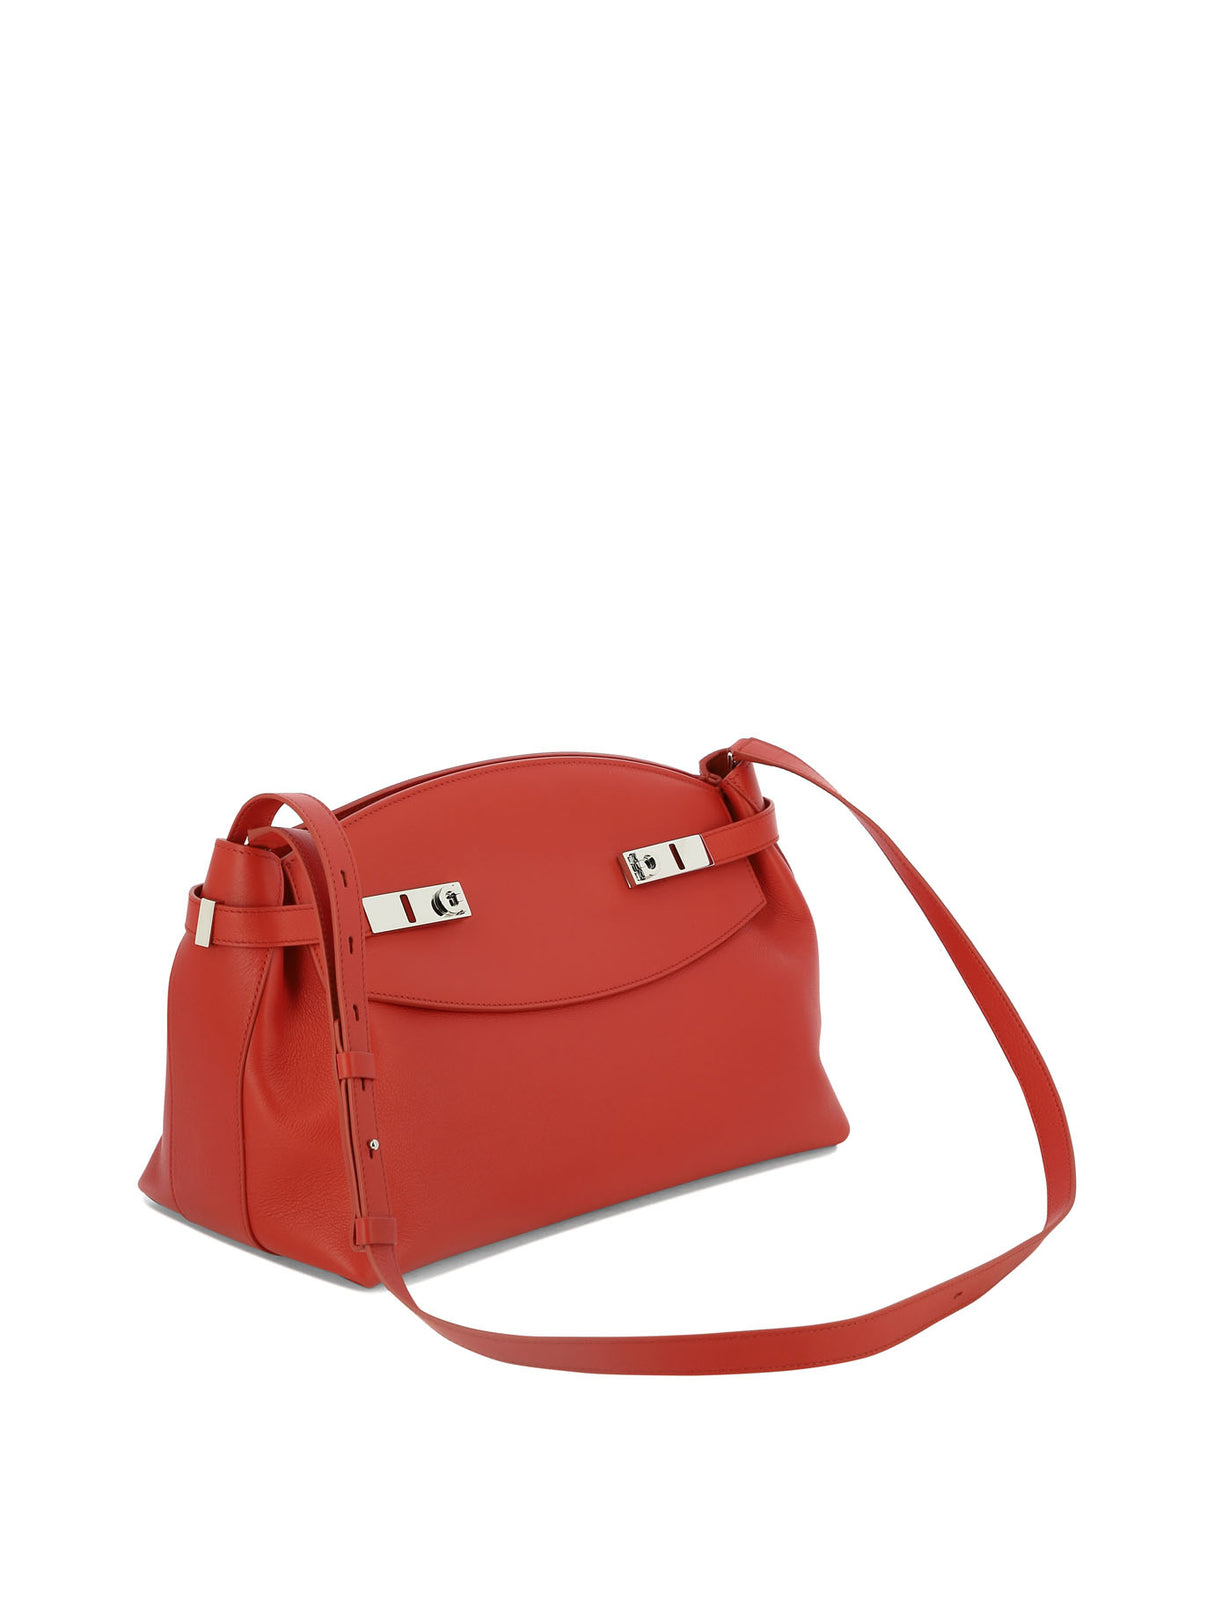 简约时尚红色悬挂式手提包